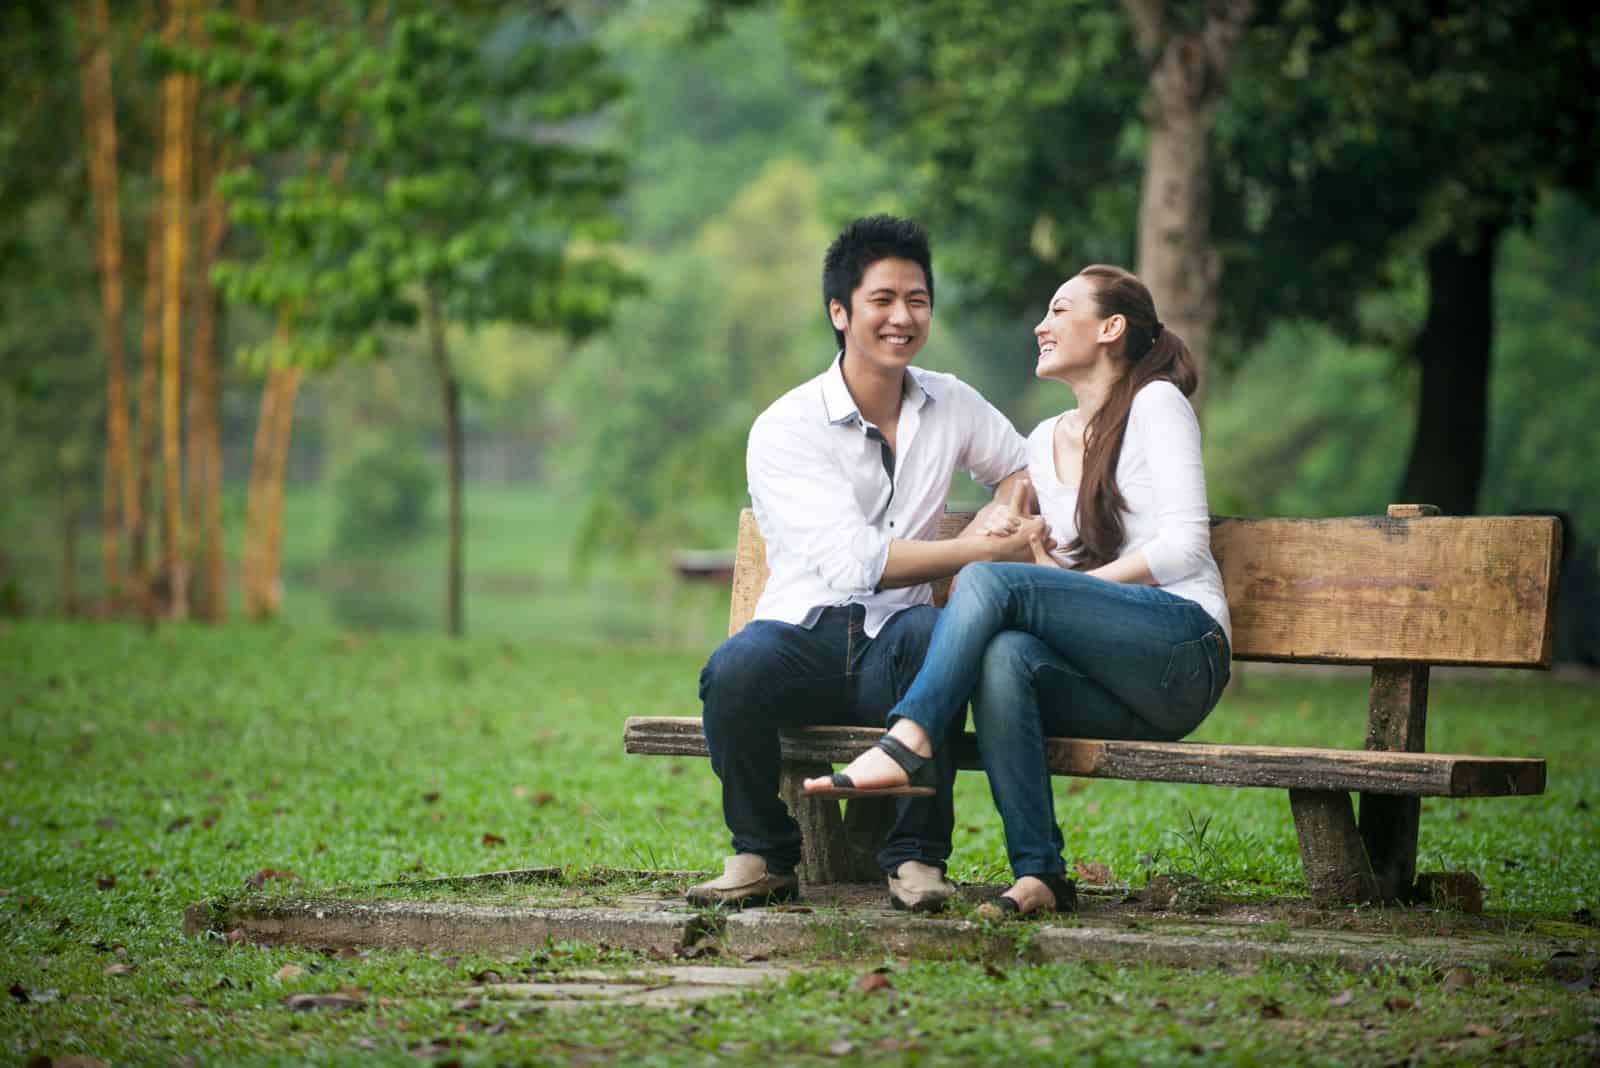 homme et femme souriants assis sur un banc de parc